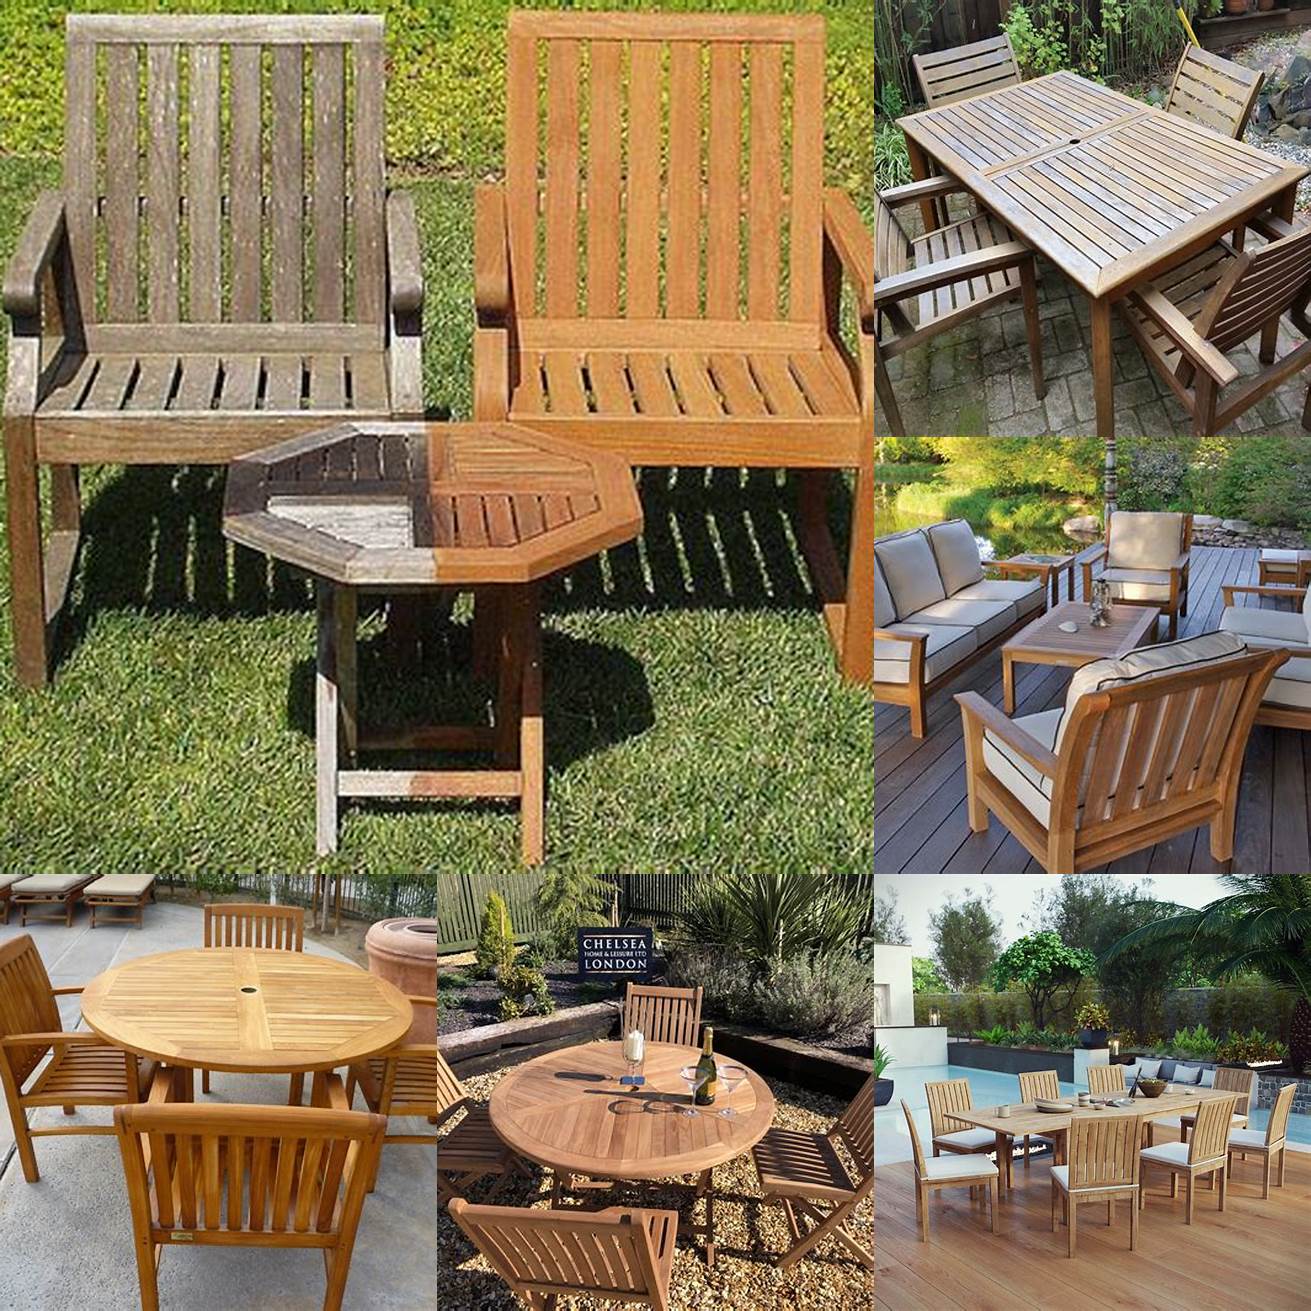 Teak outdoor furniture care